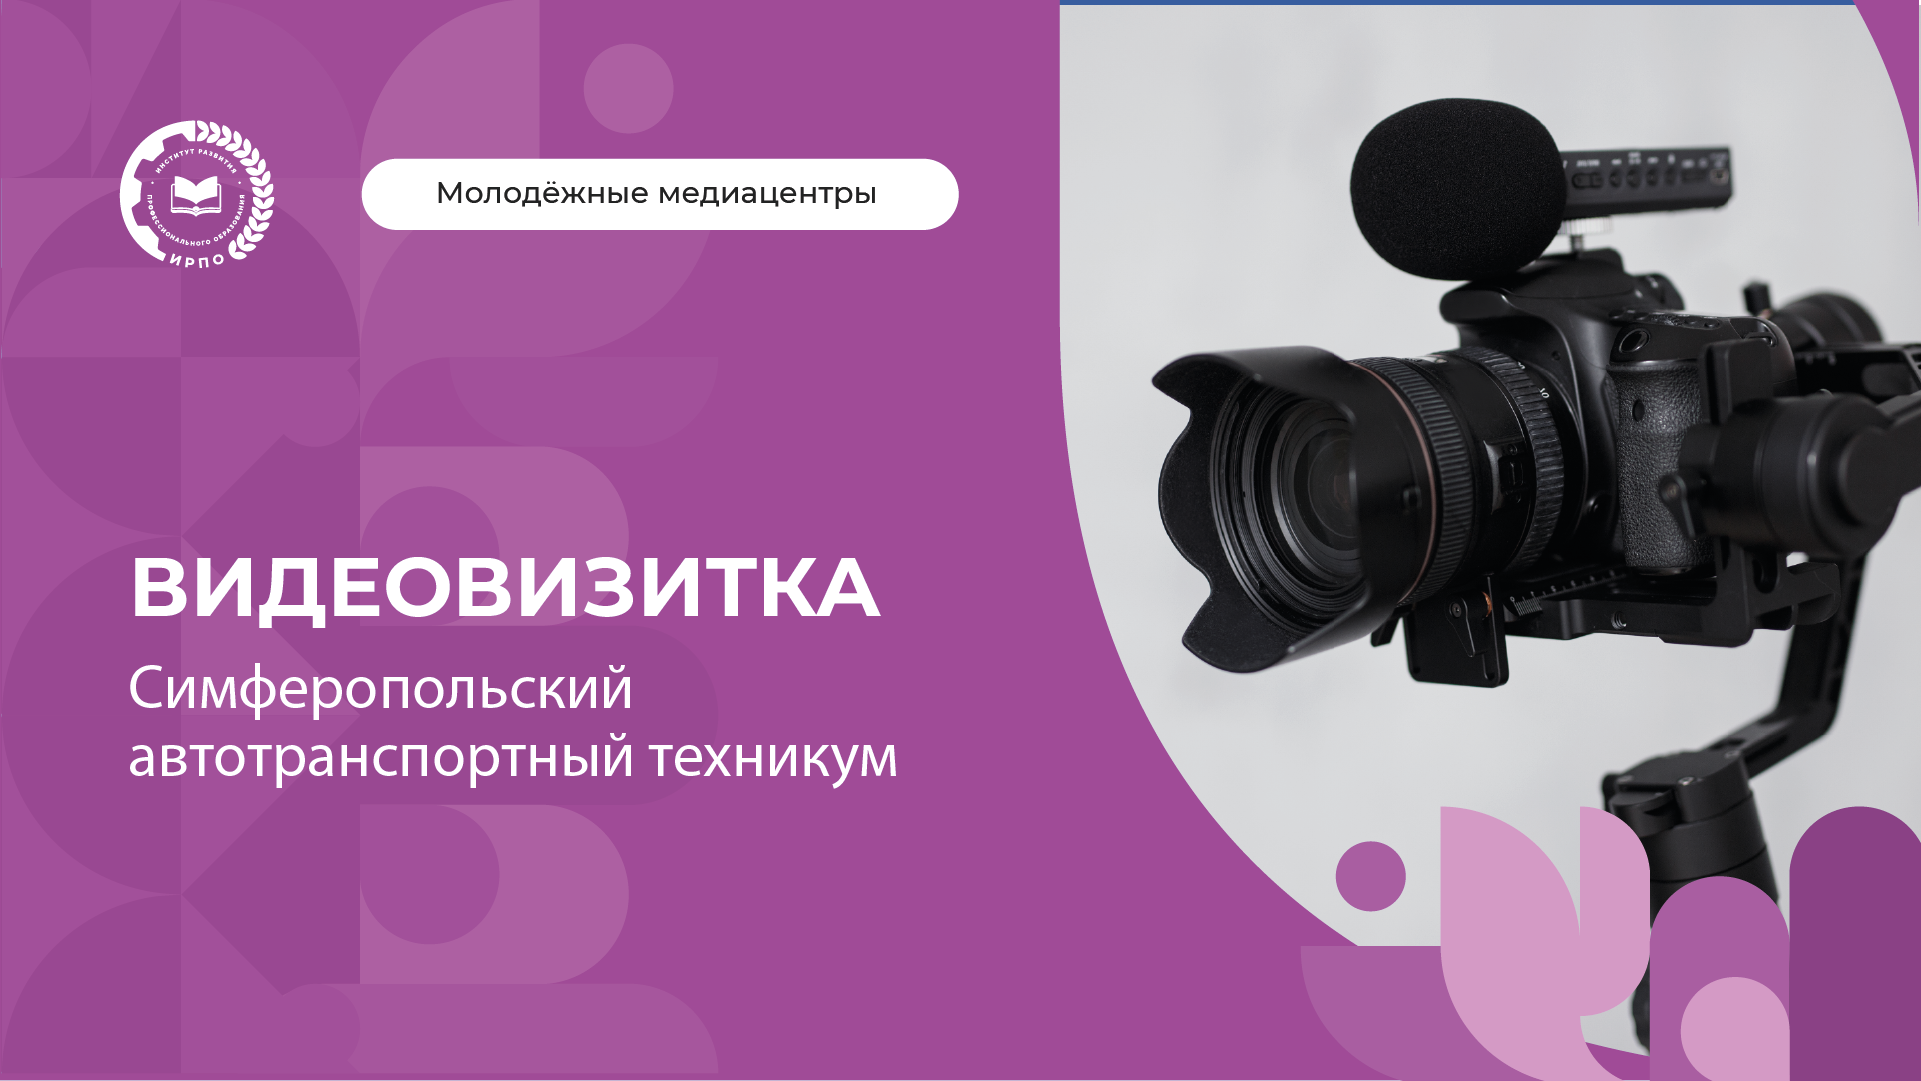 Визитка медиацентра «Объектив» Симферопольского автотранспортного техникума